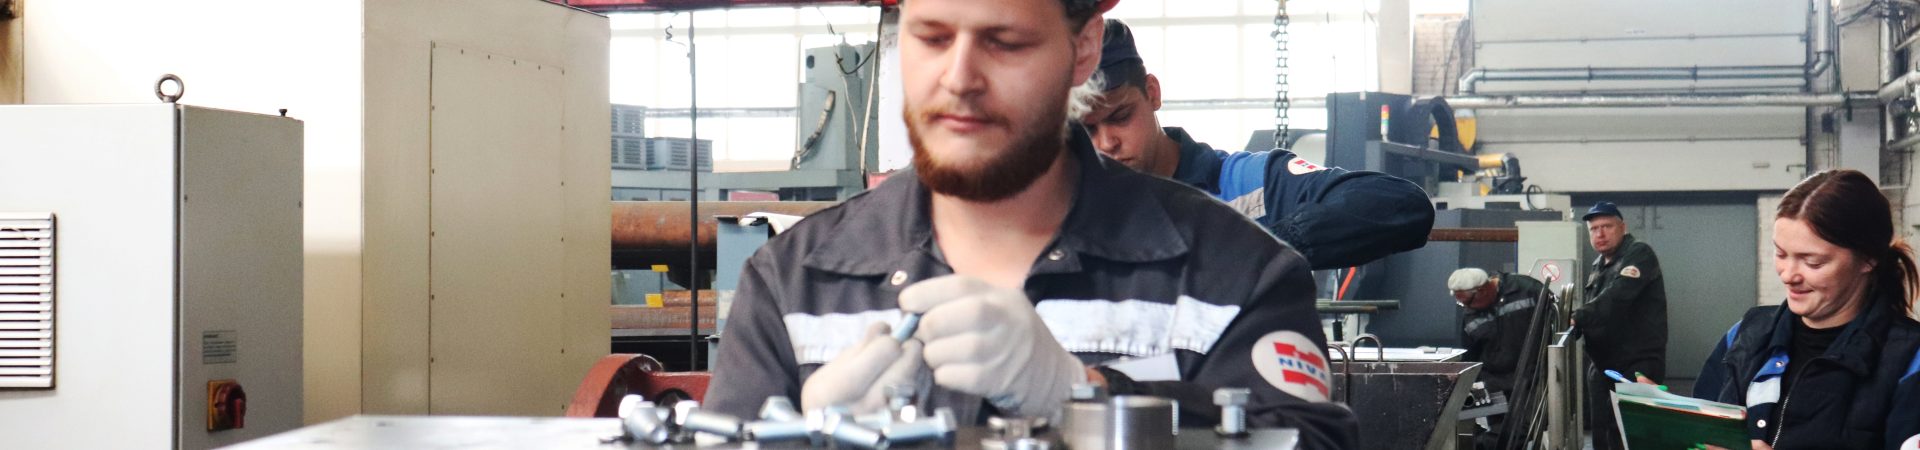 Слесарь-ремонтник Алексей Шлома: «В работе главное – спокойствие и осмысленность действий»